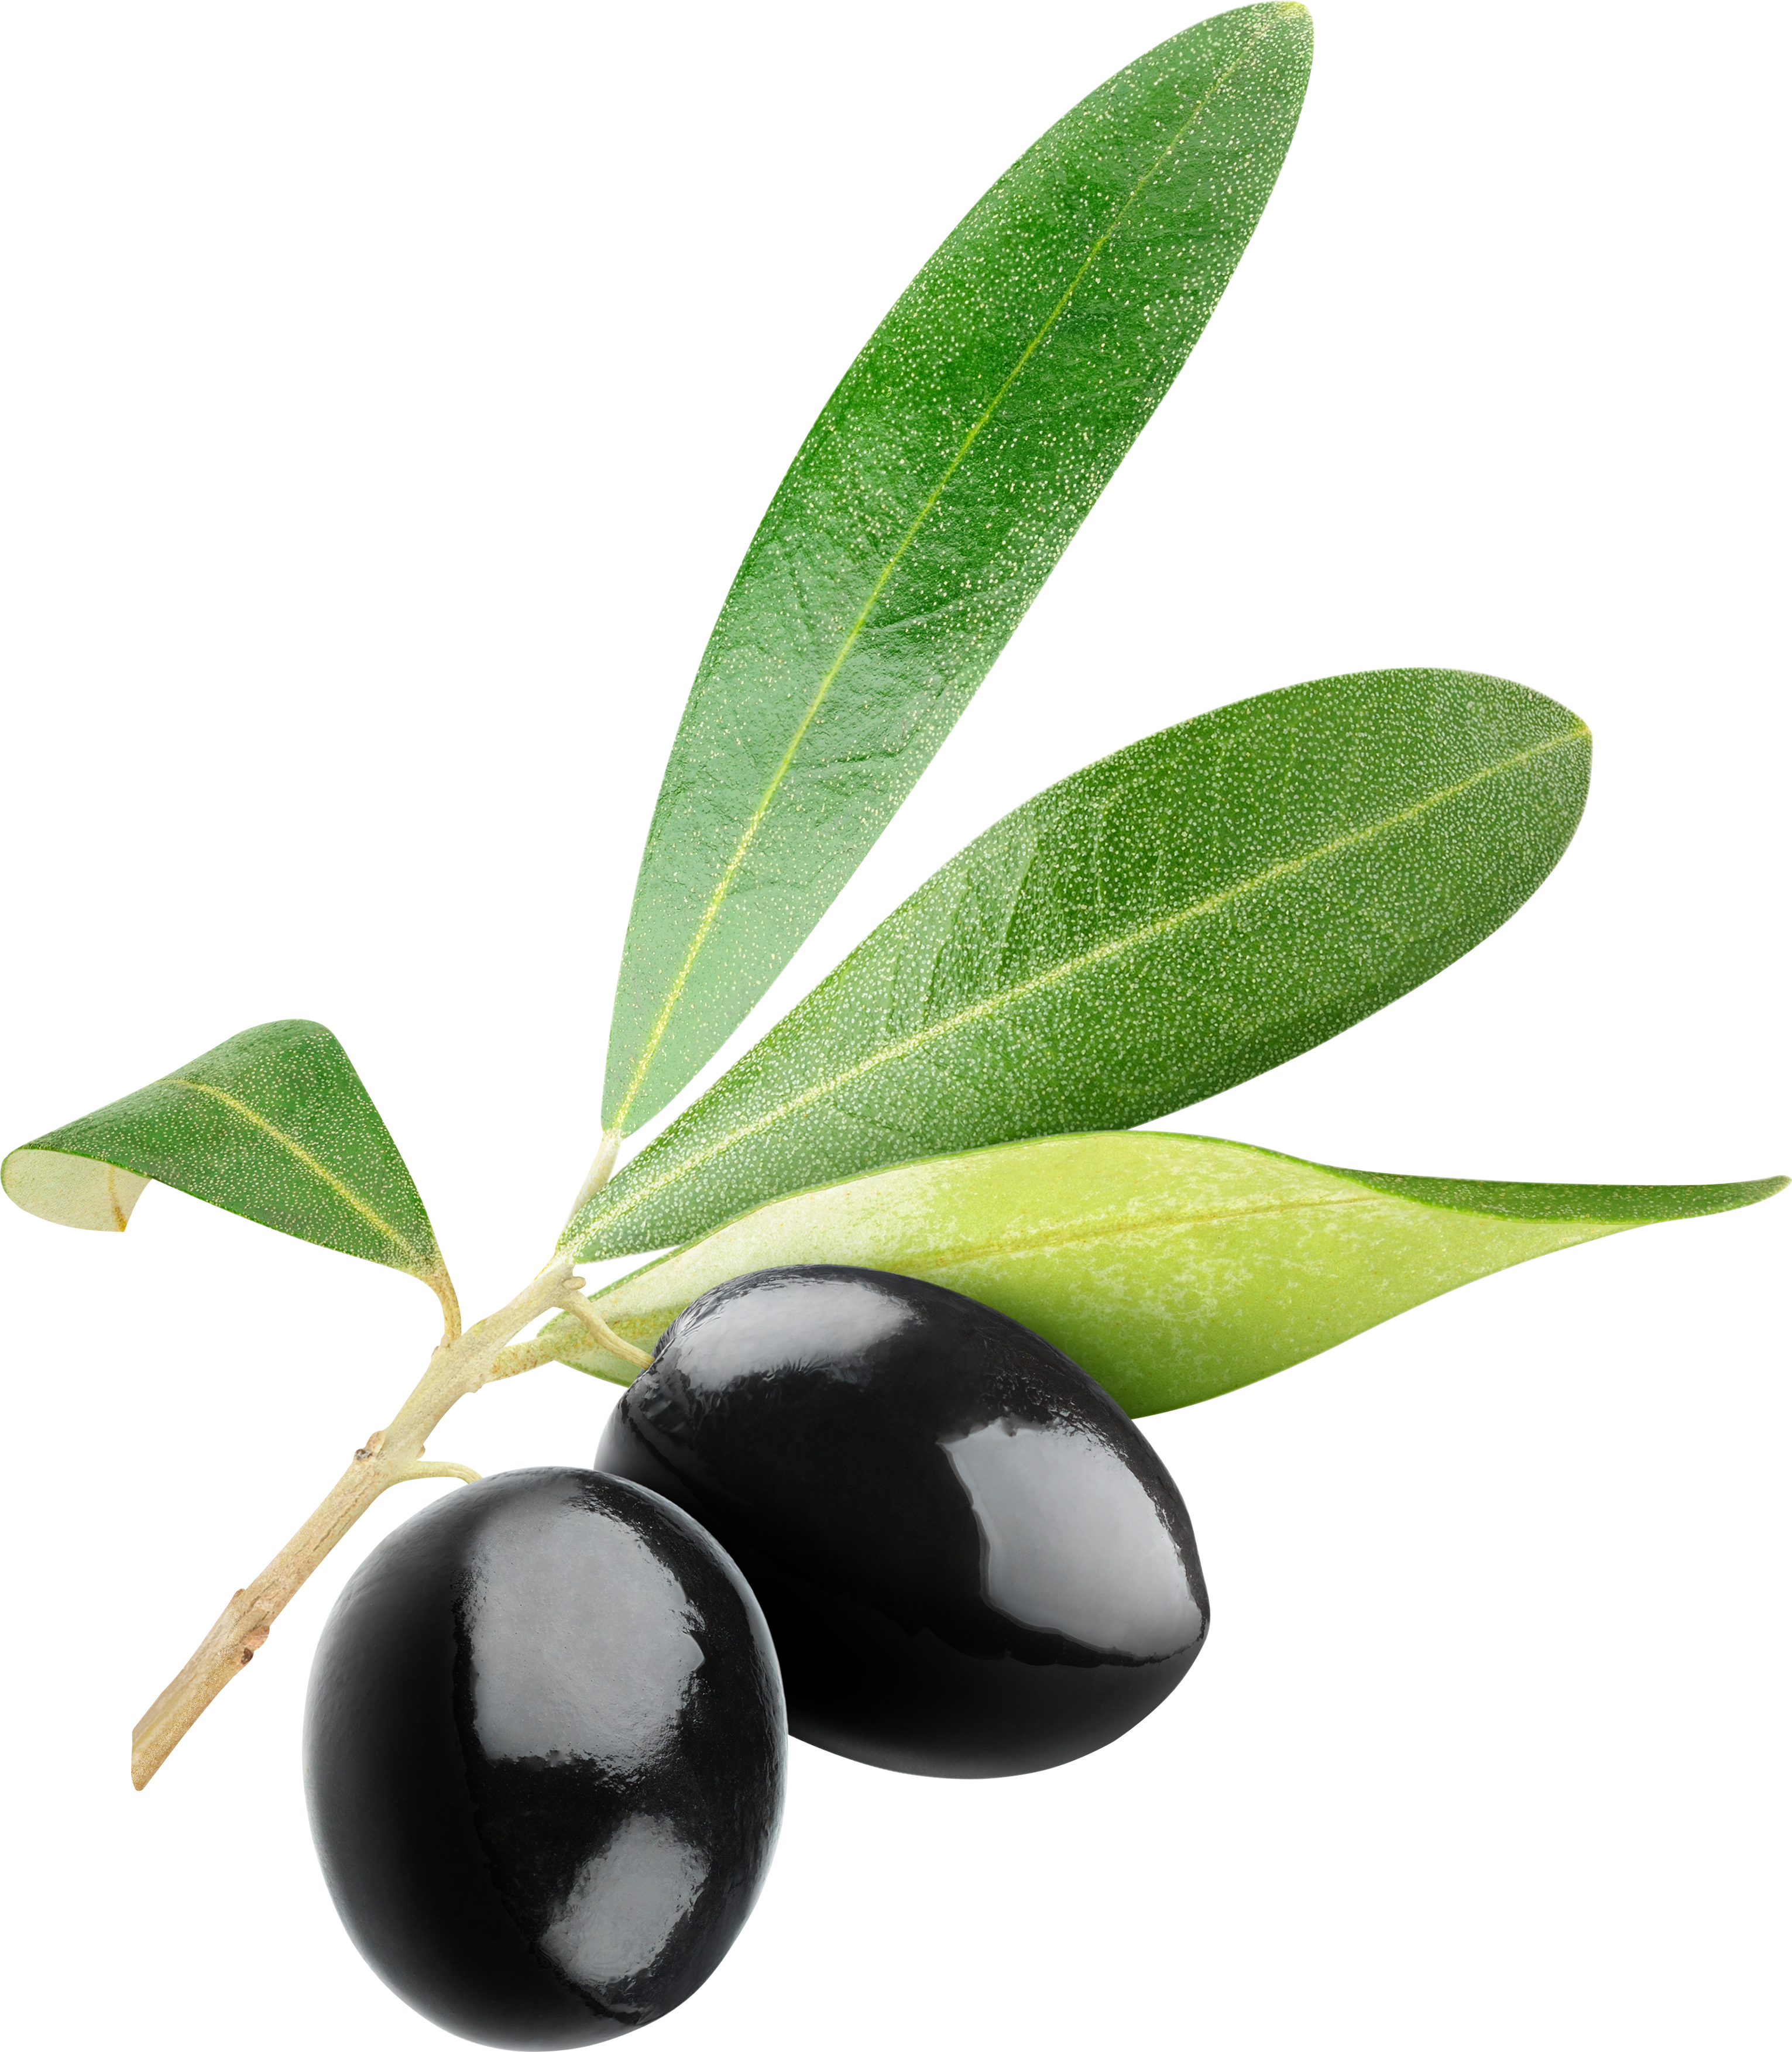 olives, olive png images download crazypngm crazy png images download #30101